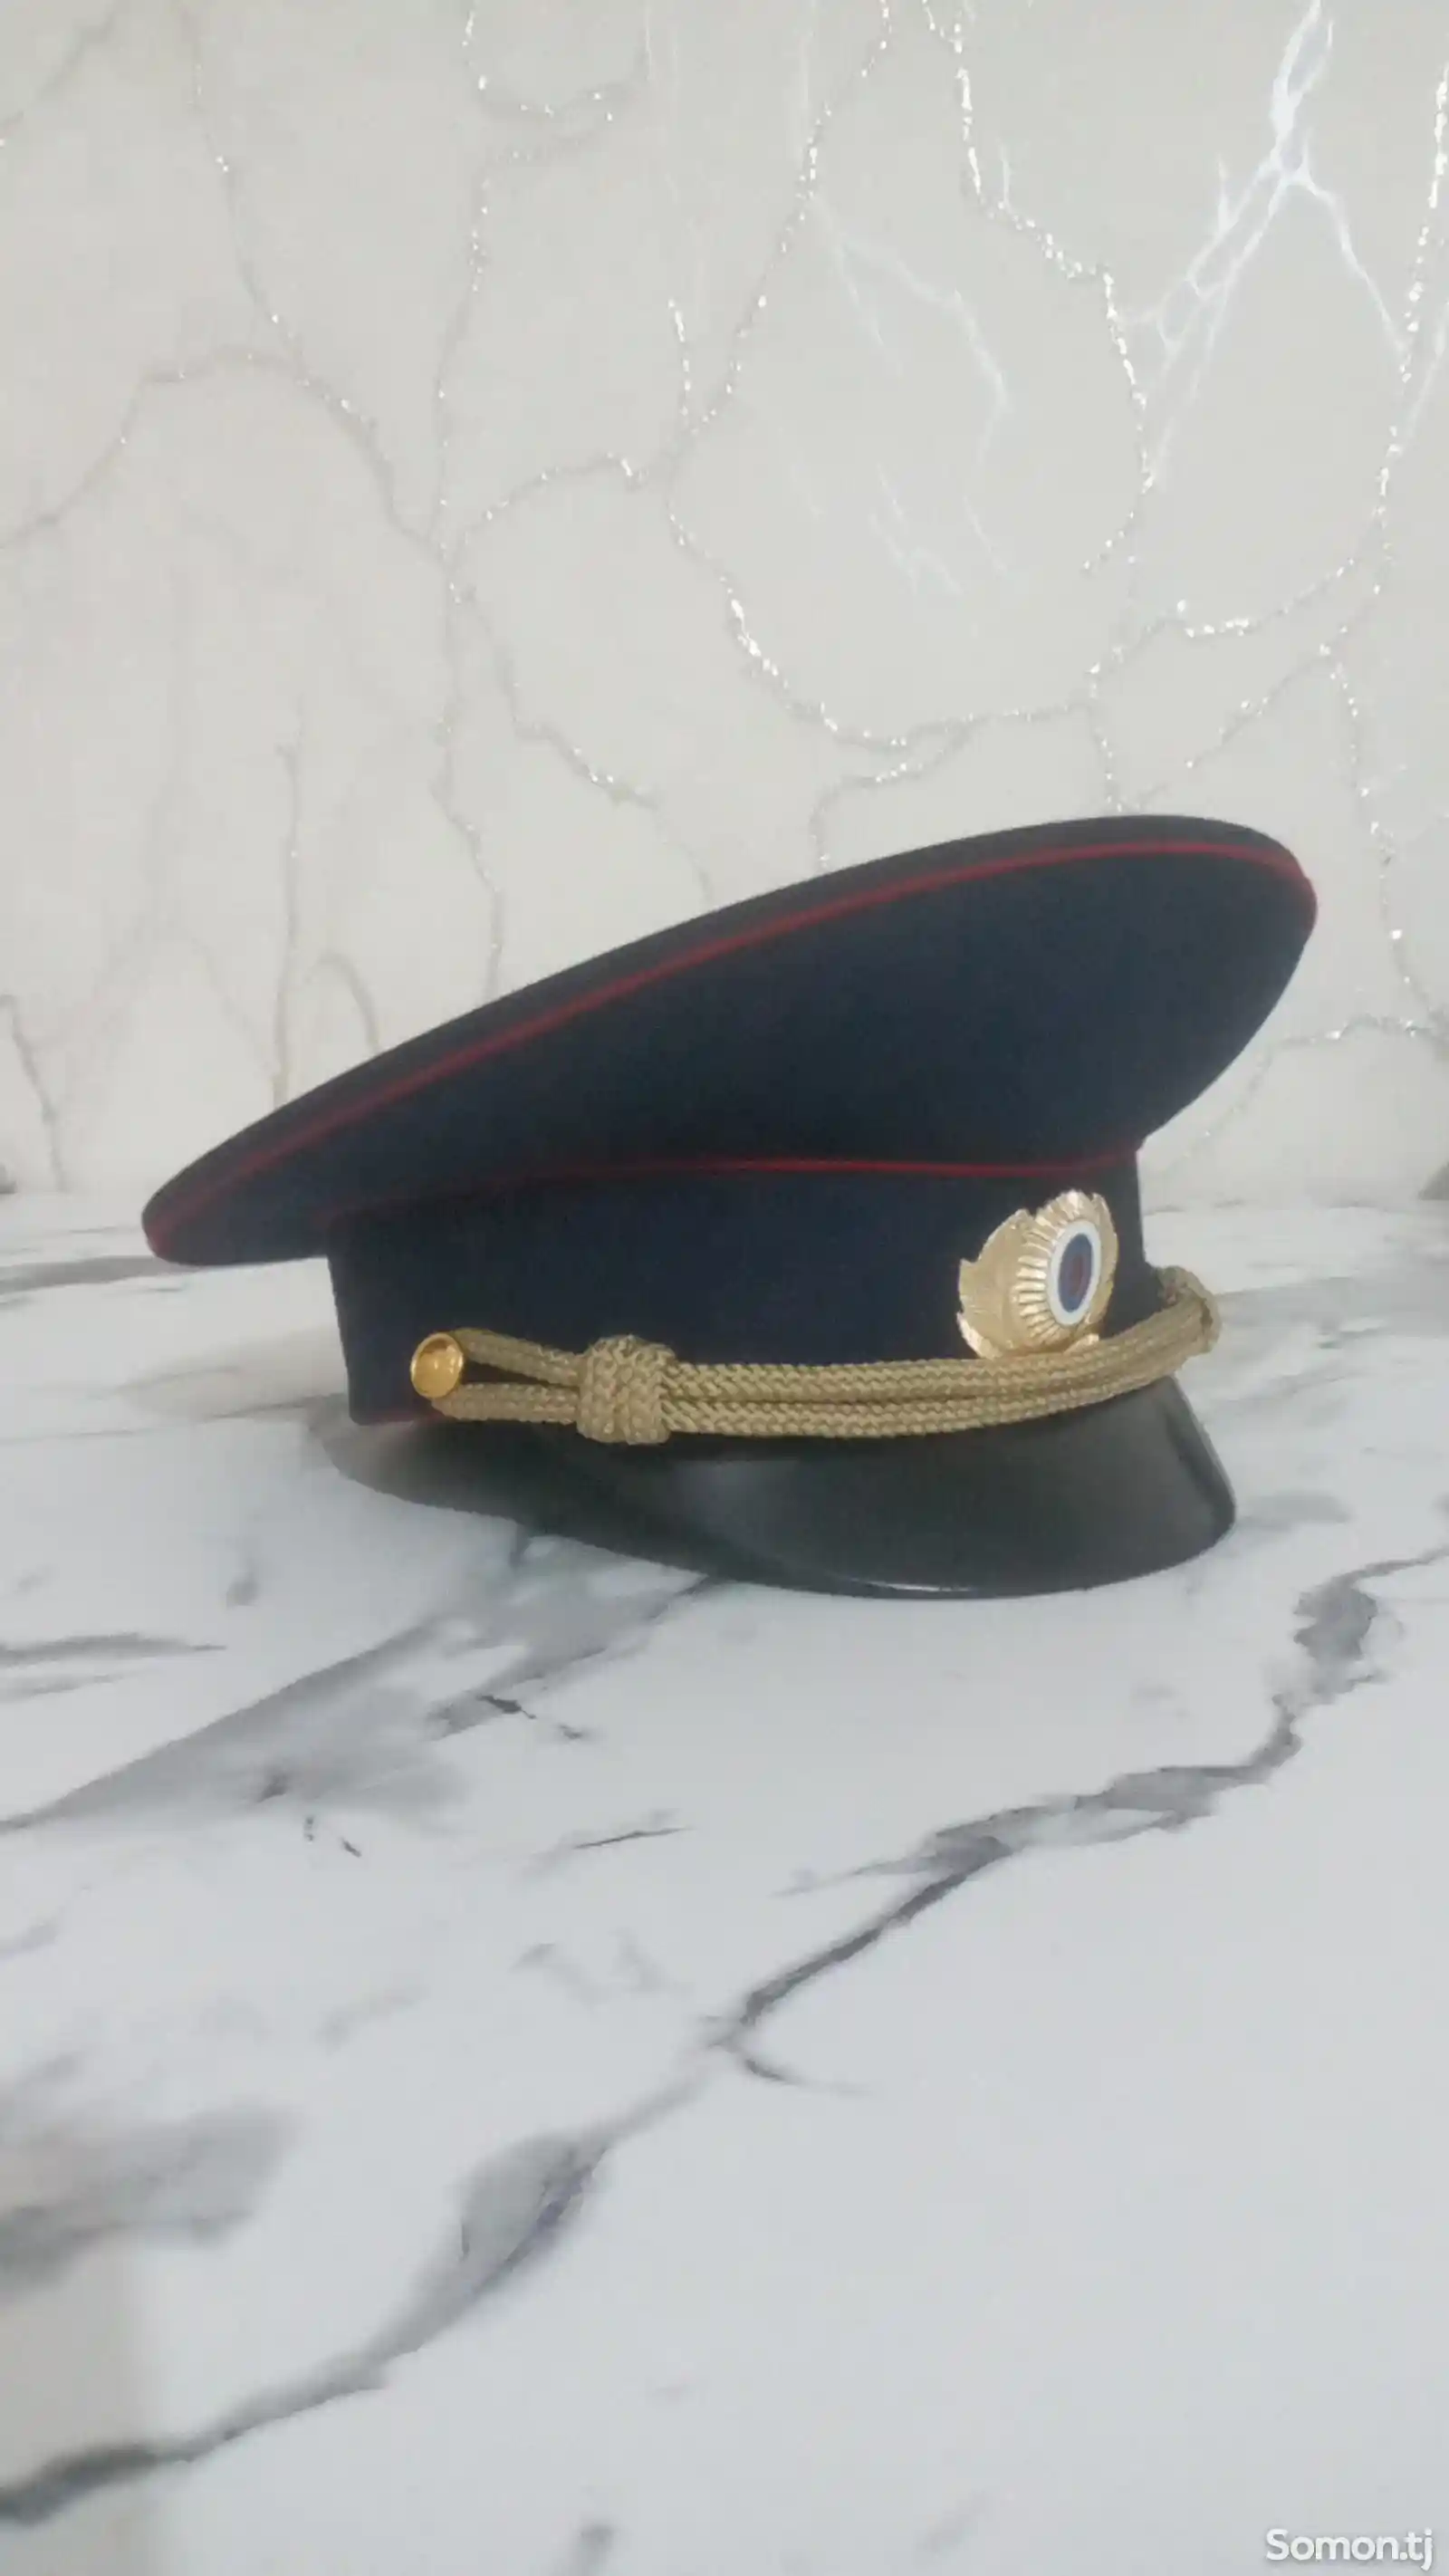 Фуражка полицейская-1